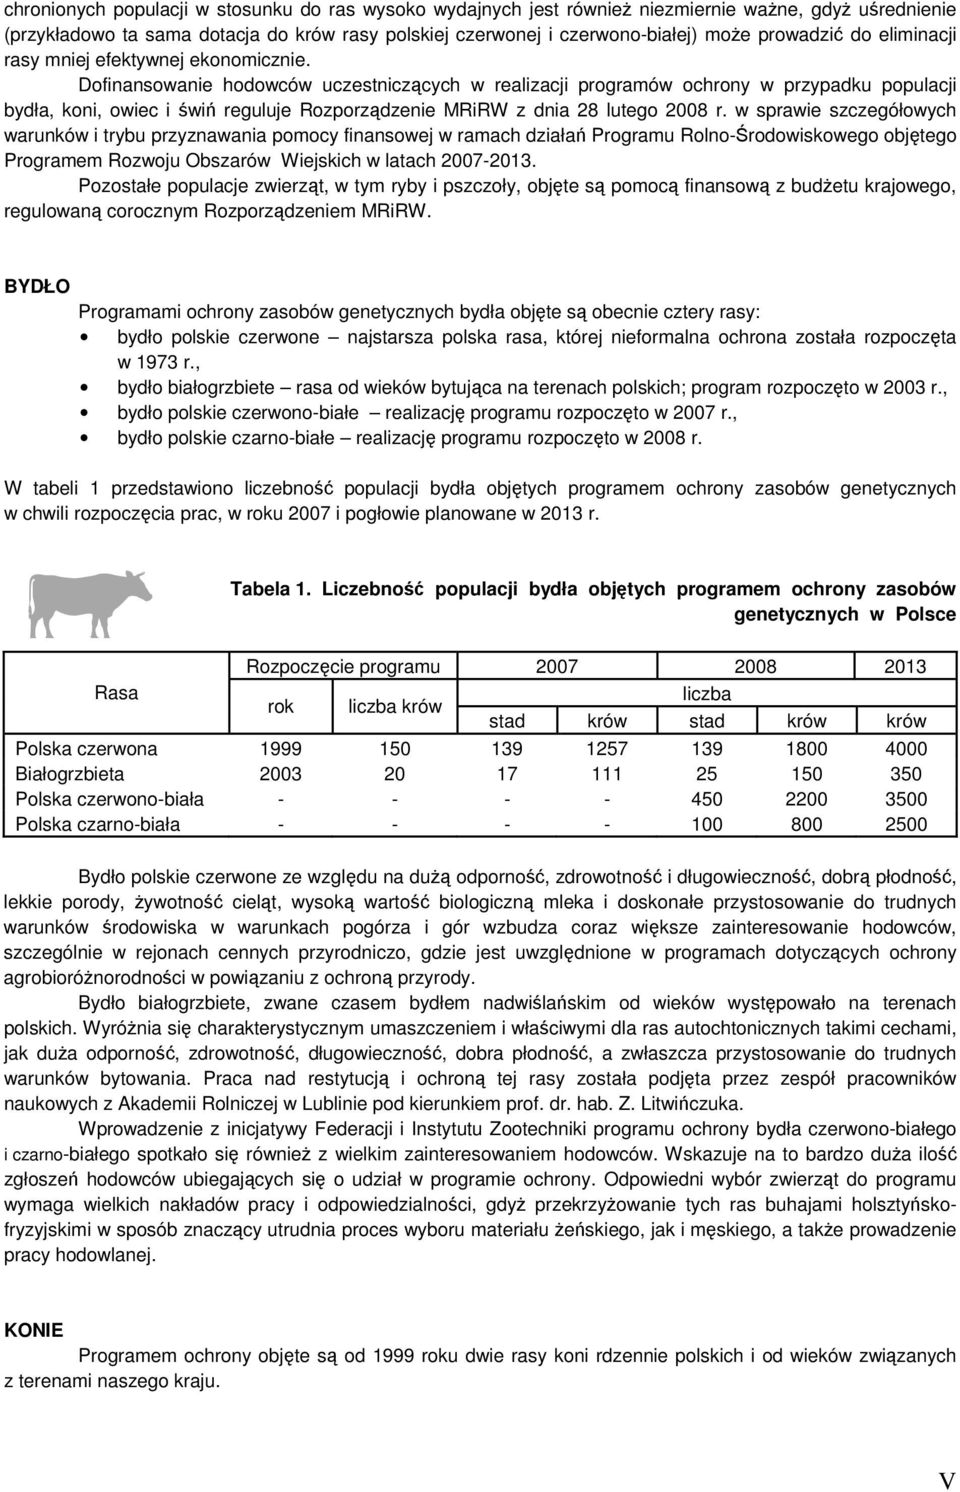 Dofinansowanie hodowców uczestniczących w realizacji programów ochrony w przypadku populacji bydła, koni, owiec i świń reguluje Rozporządzenie MRiRW z dnia 28 lutego 2008 r.